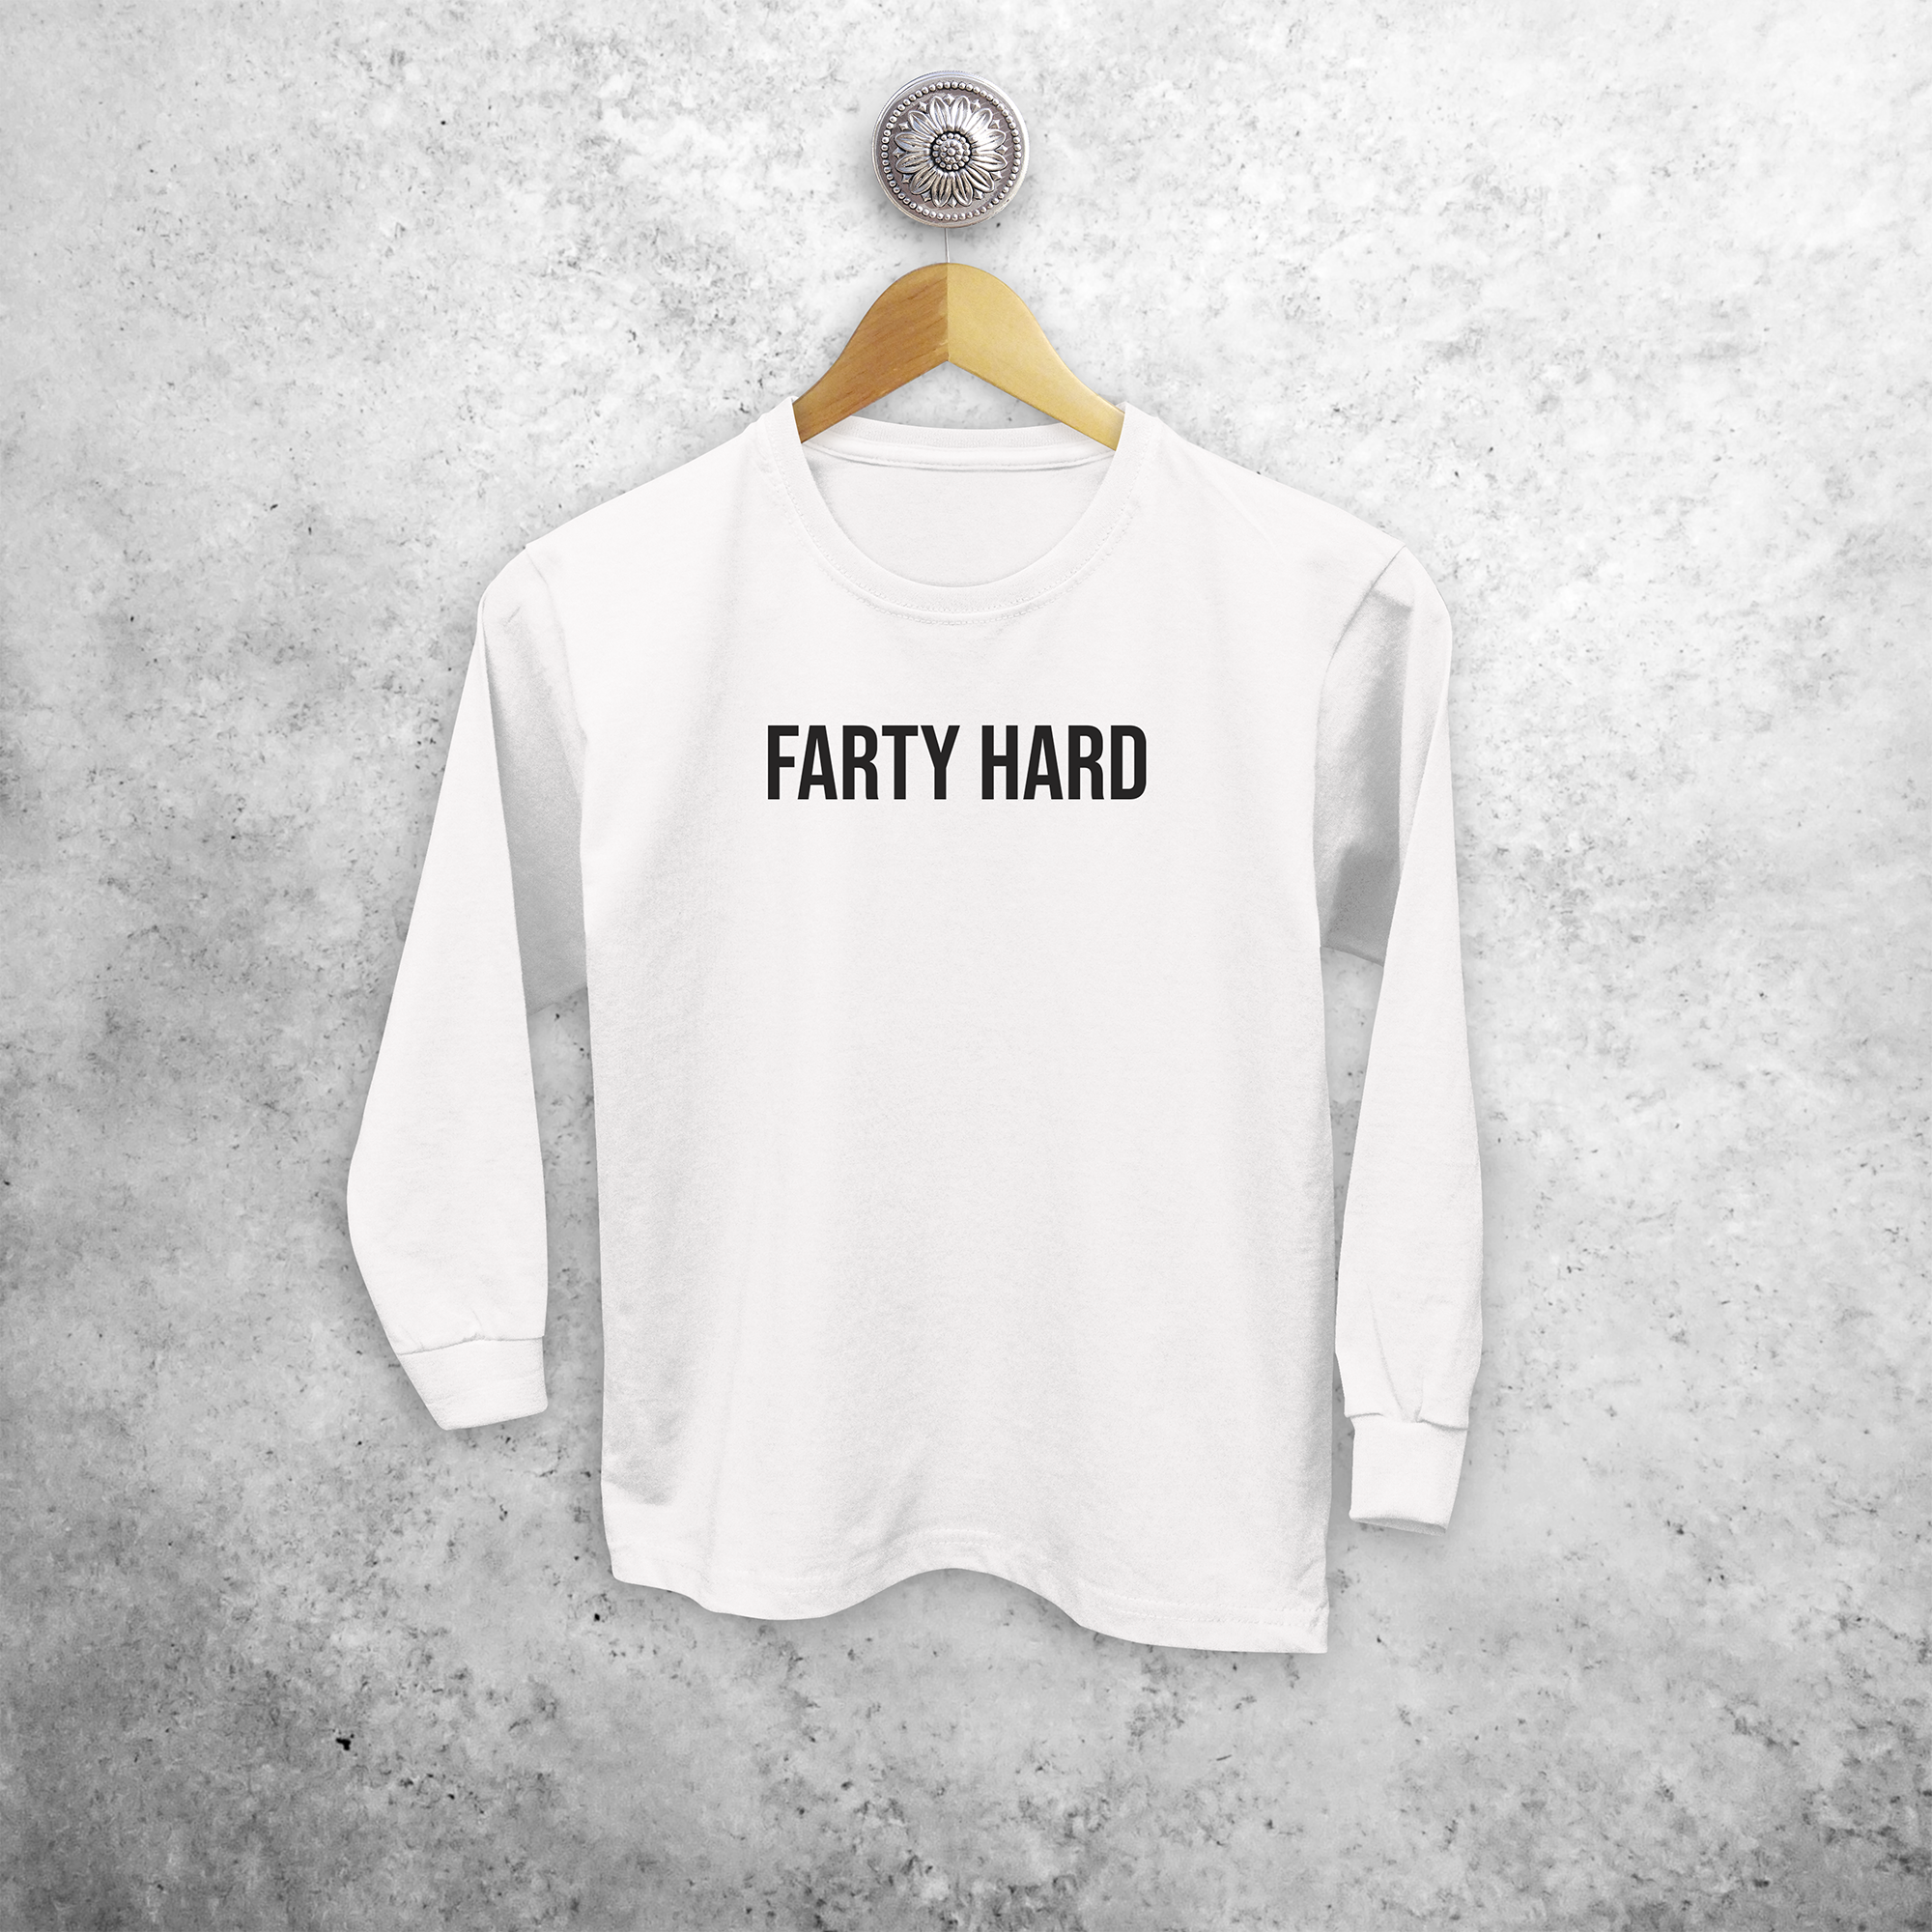 'Farty hard' kids longsleeve shirt